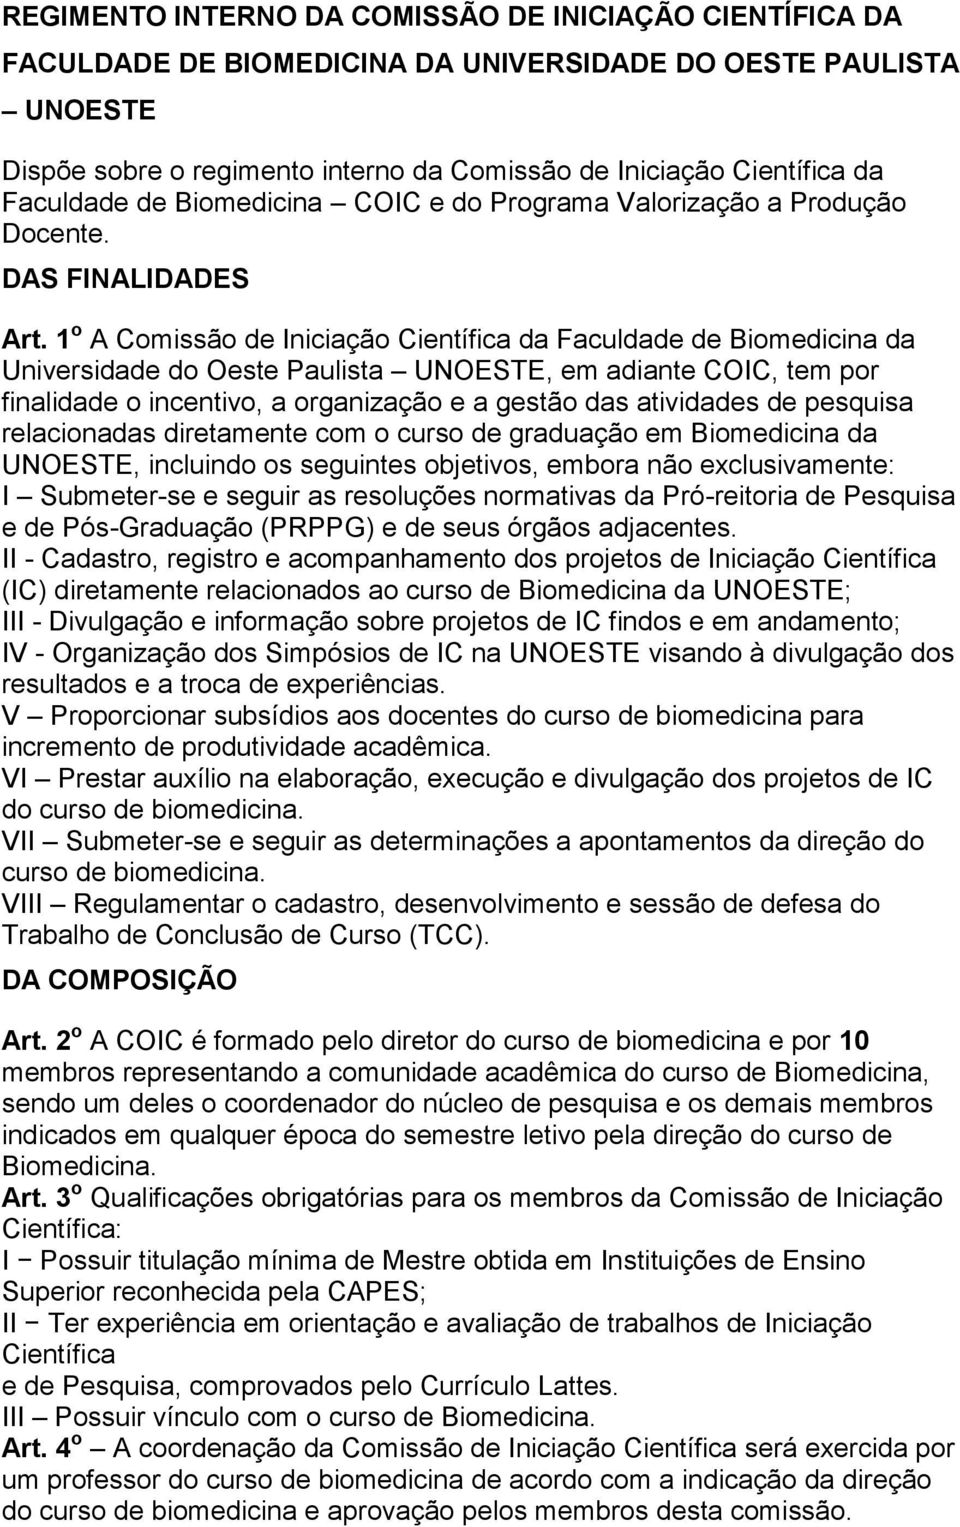 1 o A Comissão de Iniciação Científica da Faculdade de Biomedicina da Universidade do Oeste Paulista UNOESTE, em adiante COIC, tem por finalidade o incentivo, a organização e a gestão das atividades